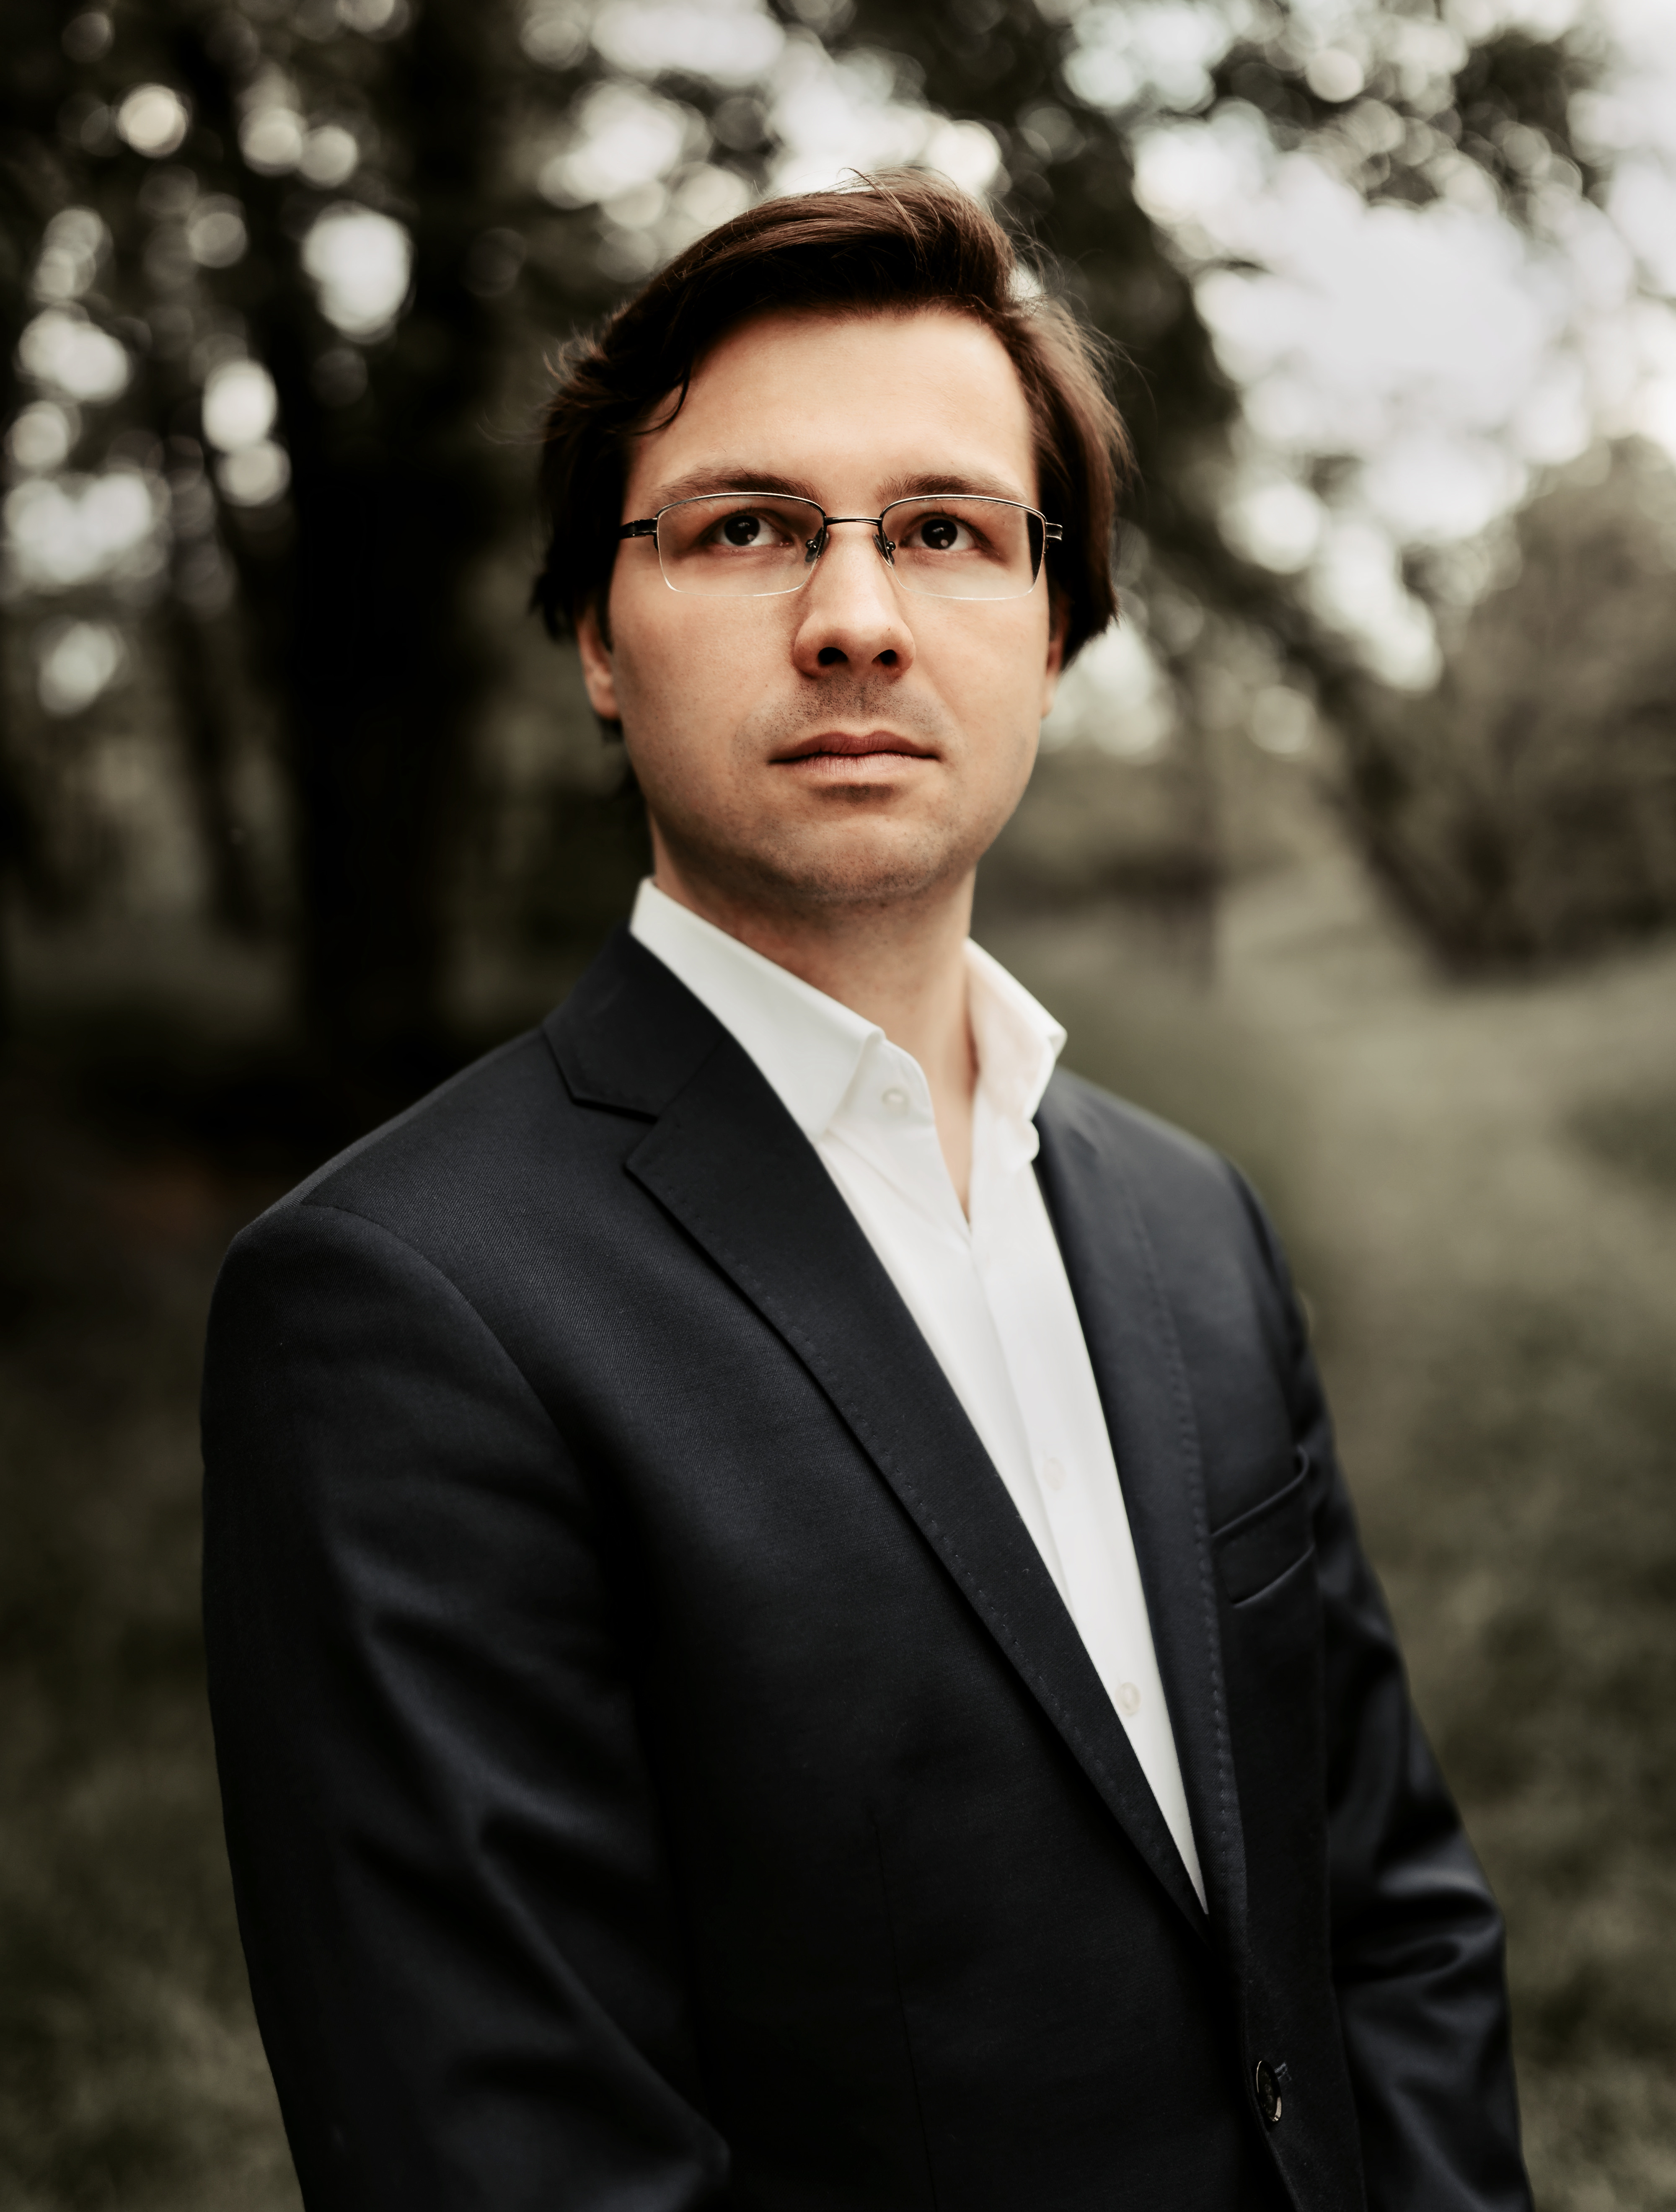  Zdjęcie pianisty Wojciecha Pyrć. Artysta w jasnej koszuli i garniturze na tle krajobrazu drzew i traw.